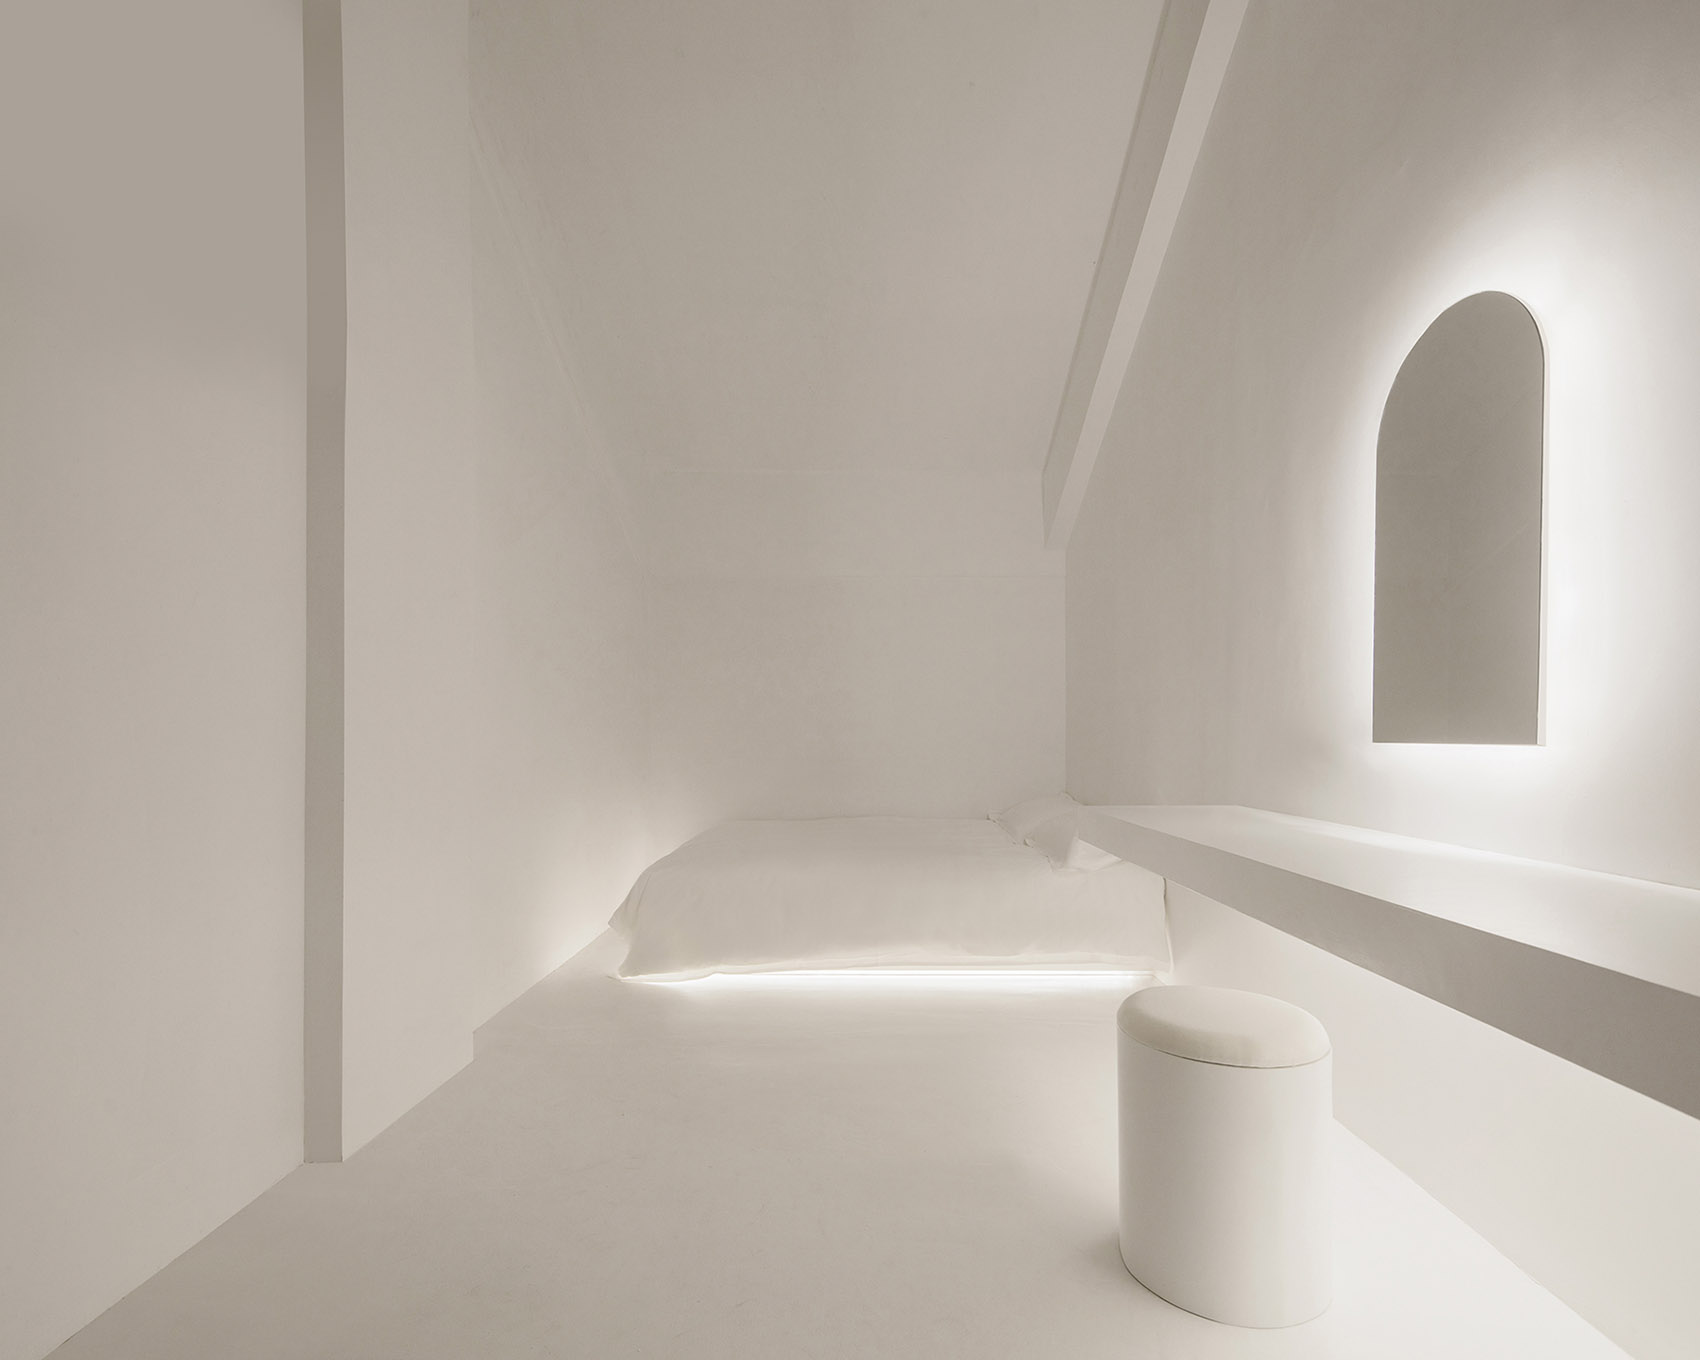 白色墙体、床、搁台、座椅，共同架构出充满轻盈质感的空间，光影成为一道盛景。